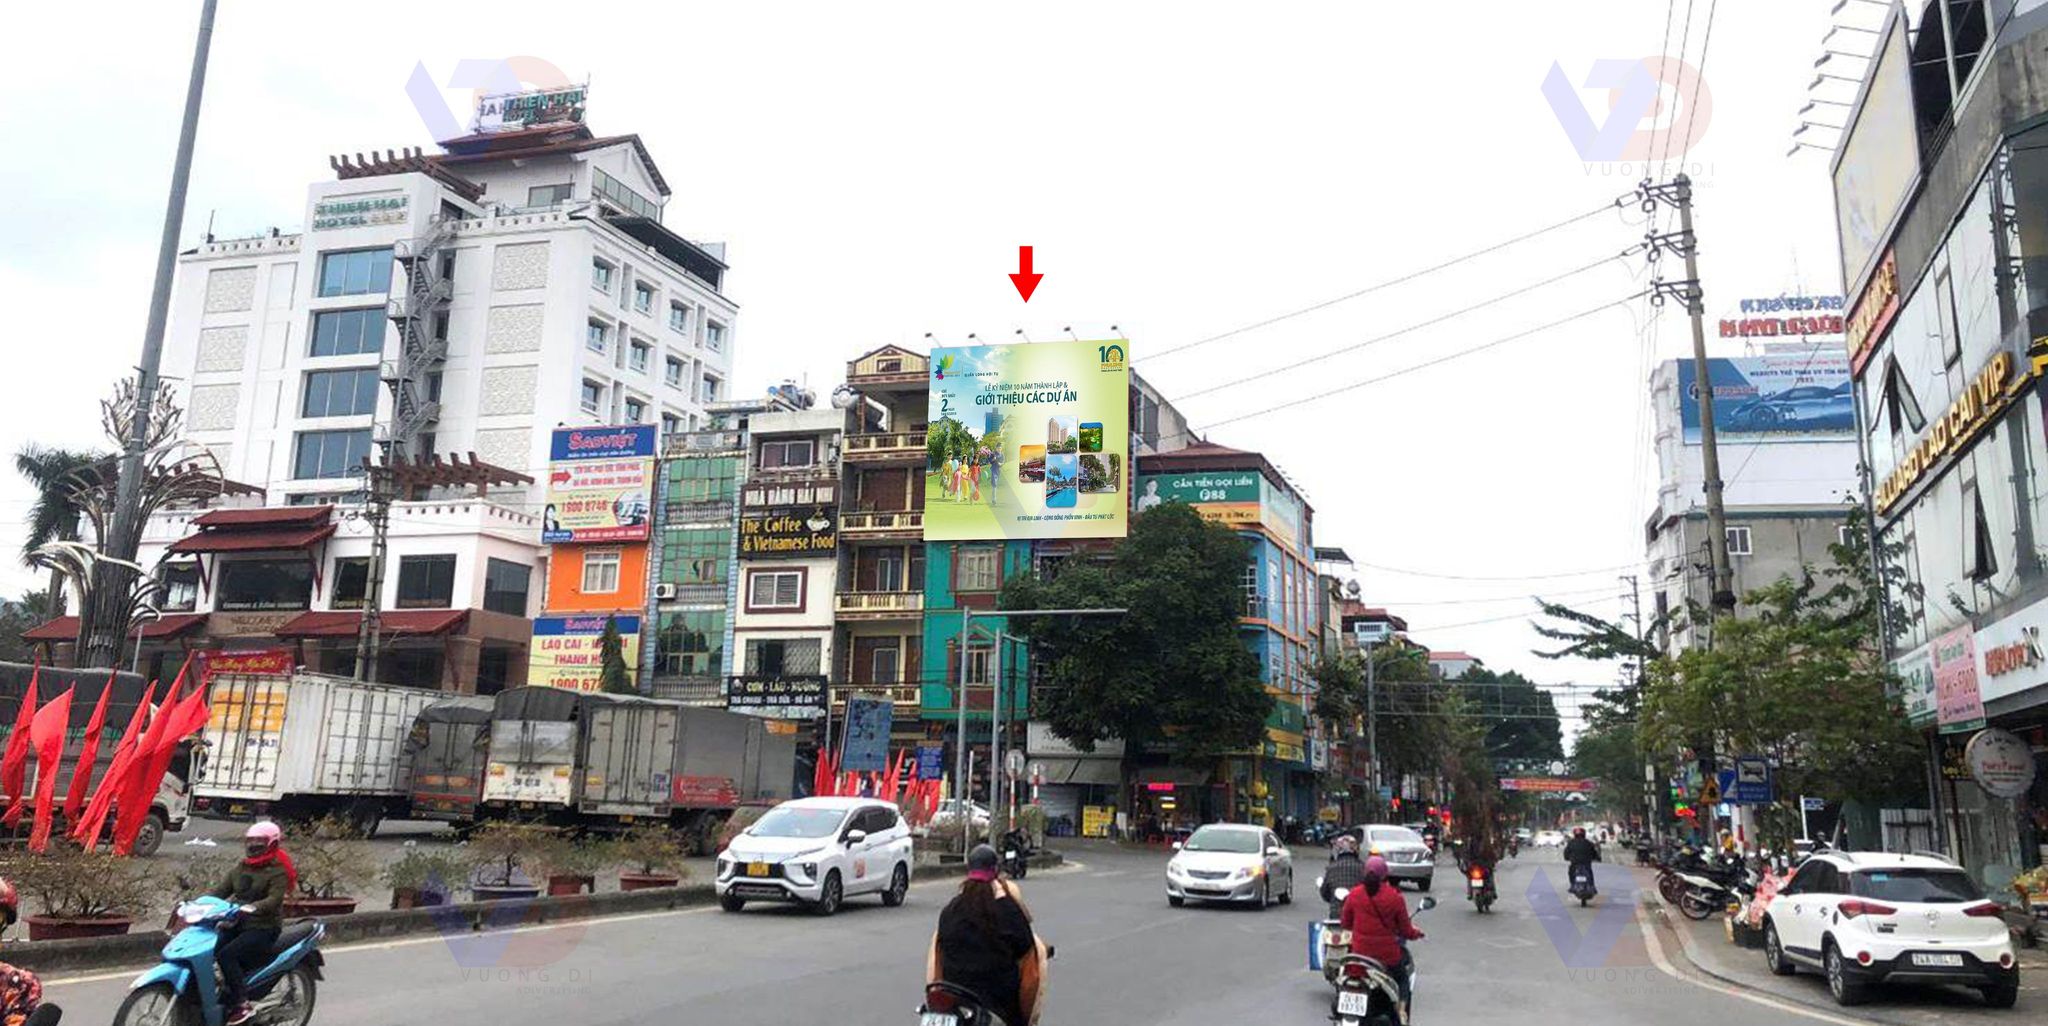 Bảng quảng cáo tại Ngã 3 Nguyễn Huệ - Hợp Thành, Thị xã Lào Cai, Tỉnh Lào Cai